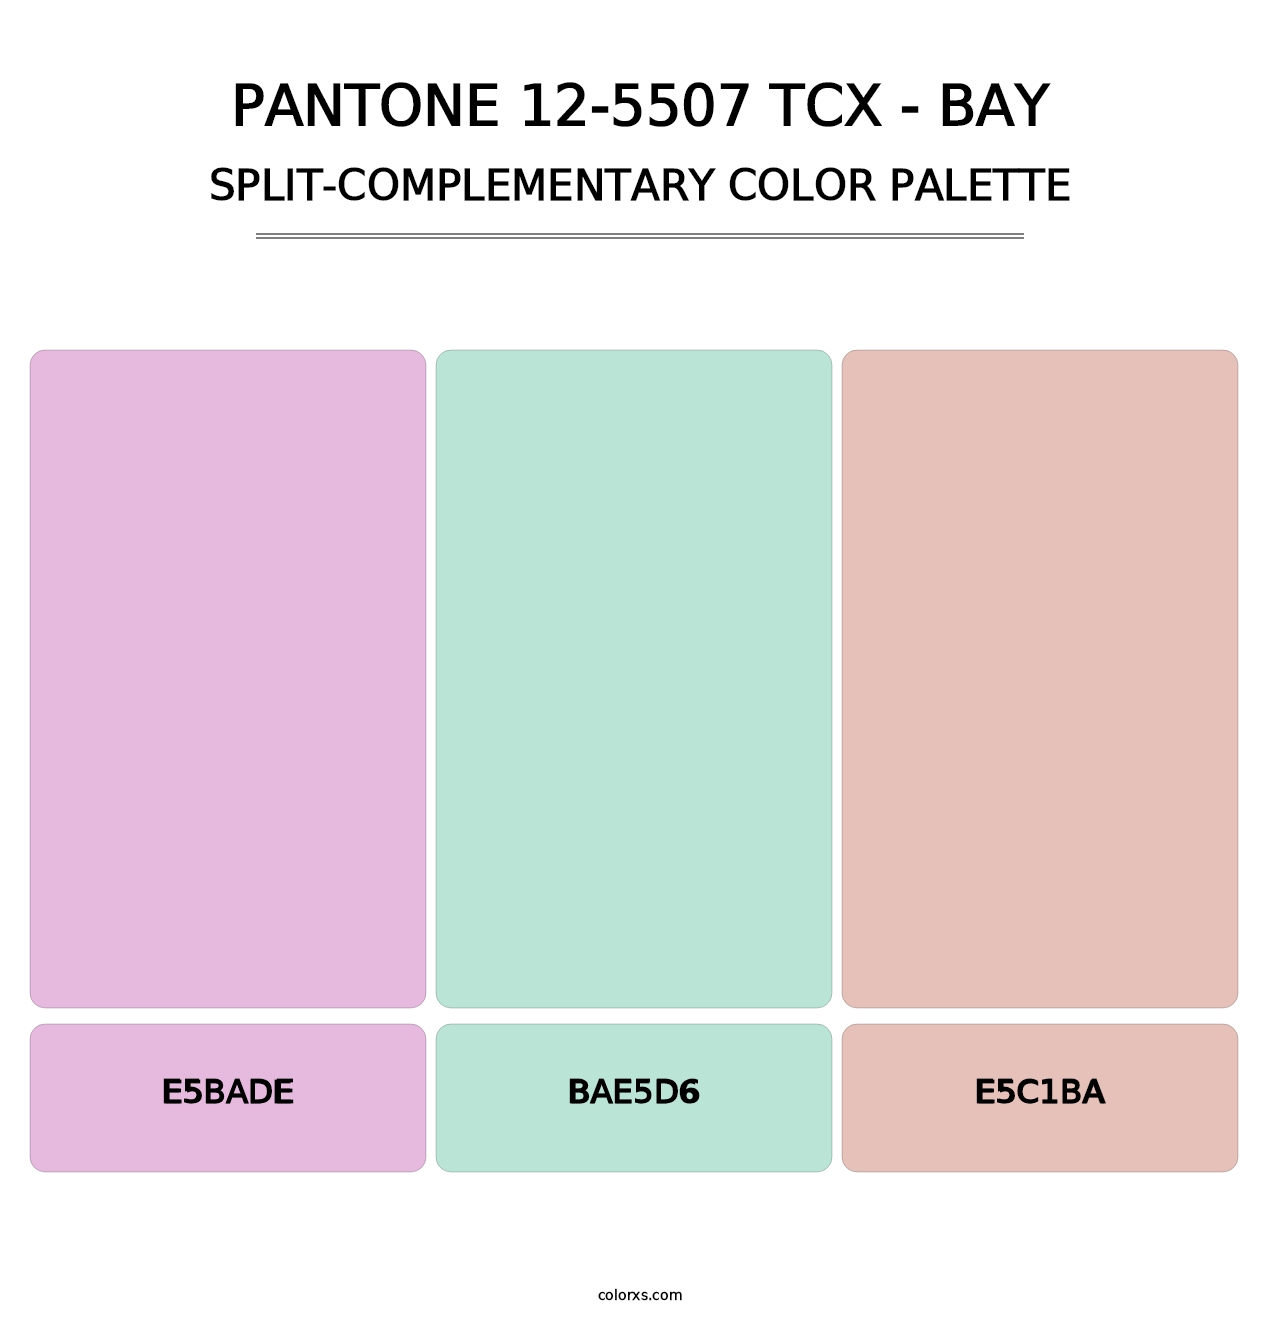 PANTONE 12-5507 TCX - Bay - Split-Complementary Color Palette